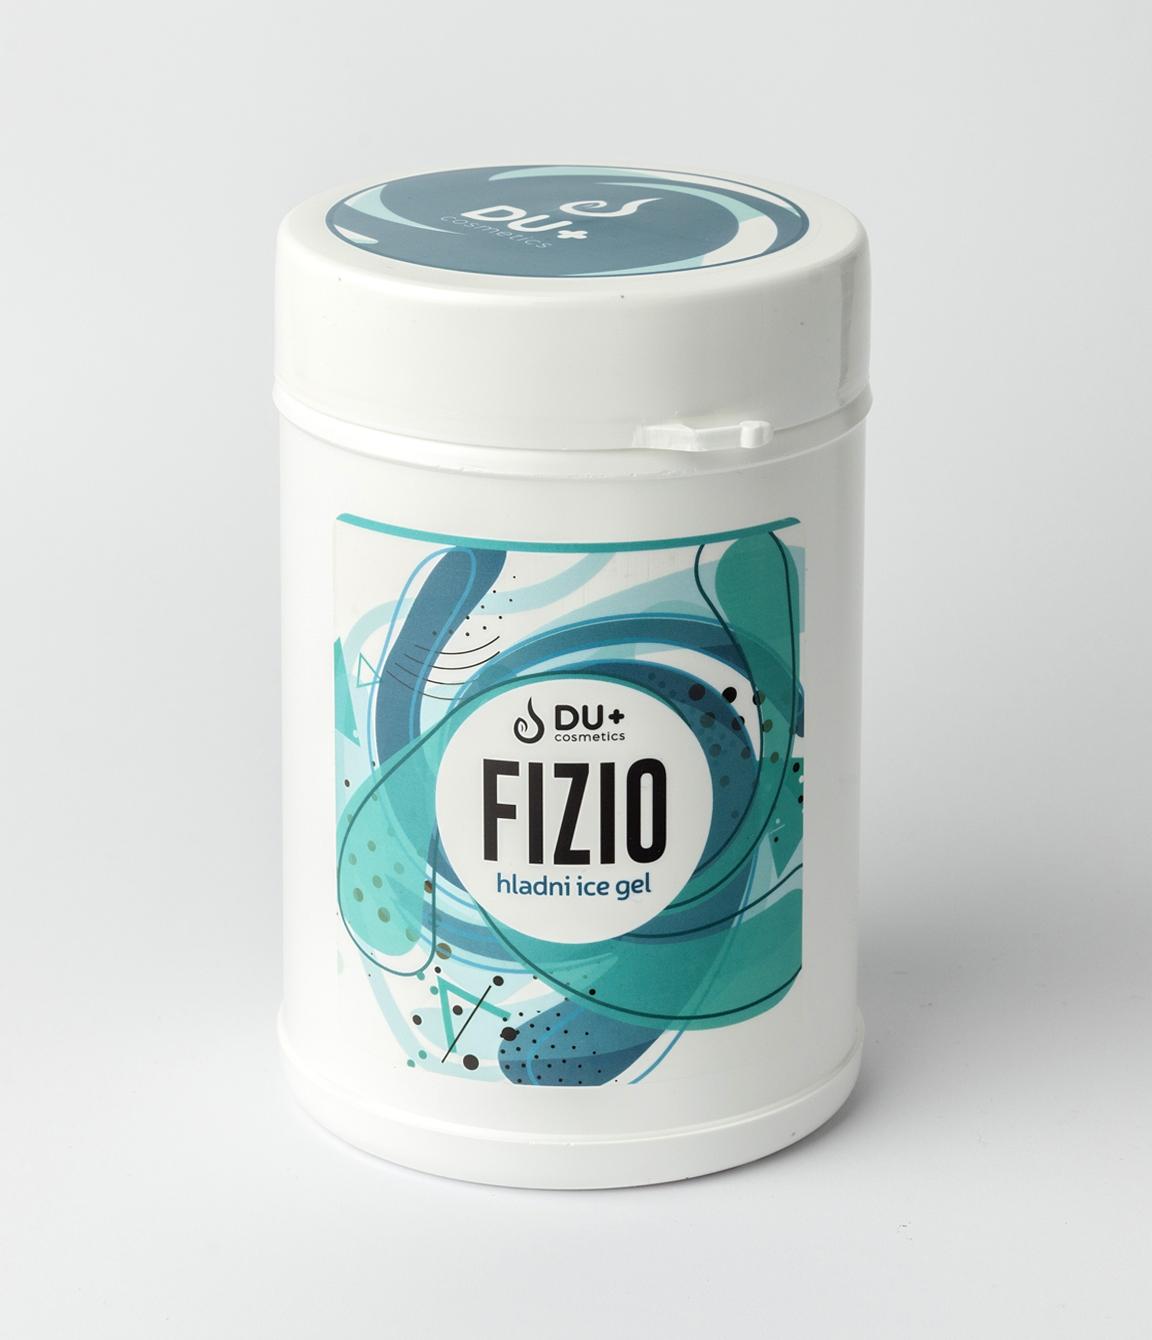 Du+ Cosmetics Fizio Hladni ICE gel, 1kg